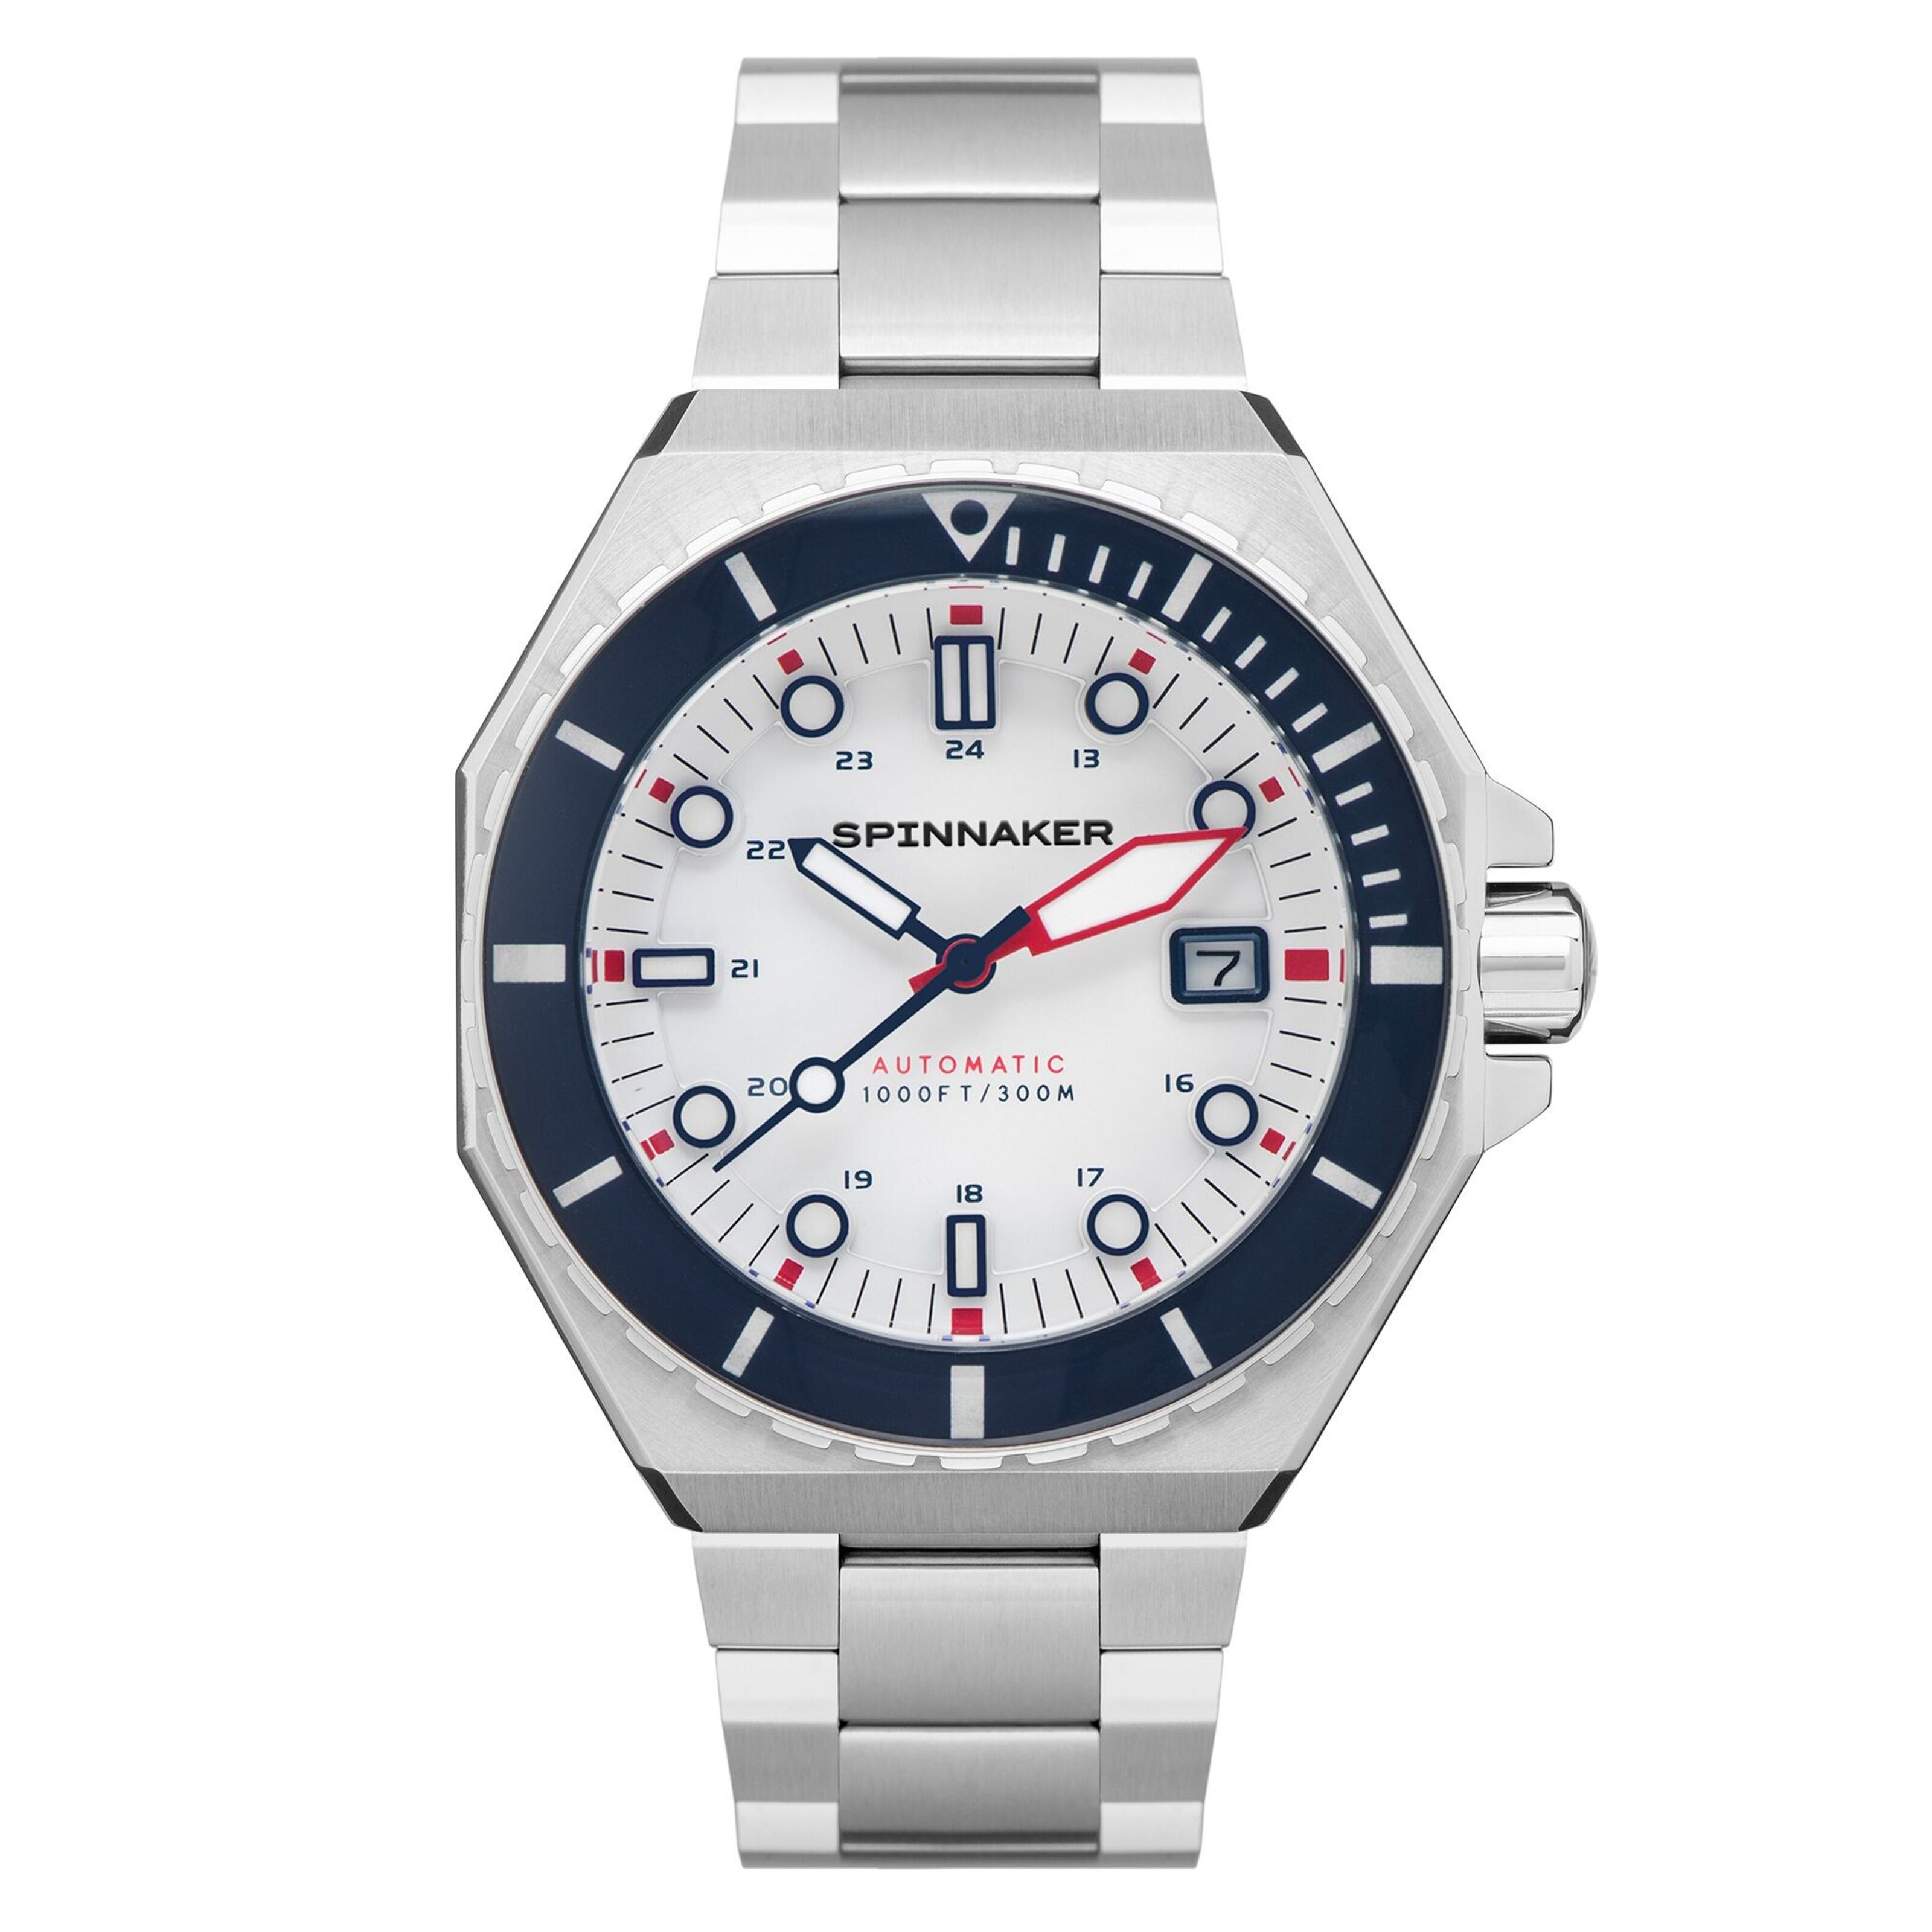 Reloj Timex Tw5m02800 - Gris